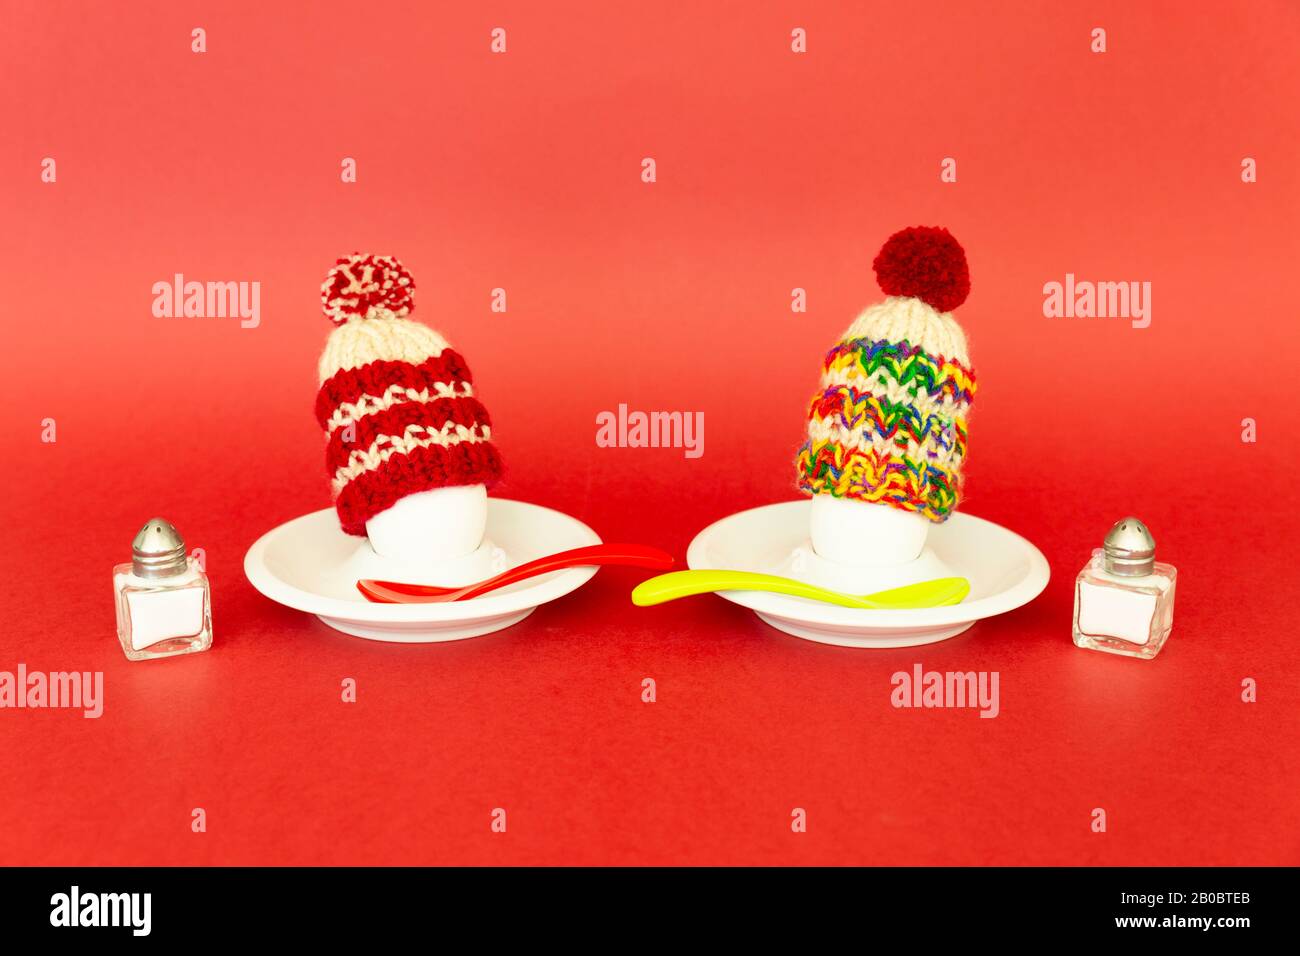 Divertente concetto di colazione con uova sode che portano cappelli di lana lavorato a maglia su sfondo rosso Foto Stock